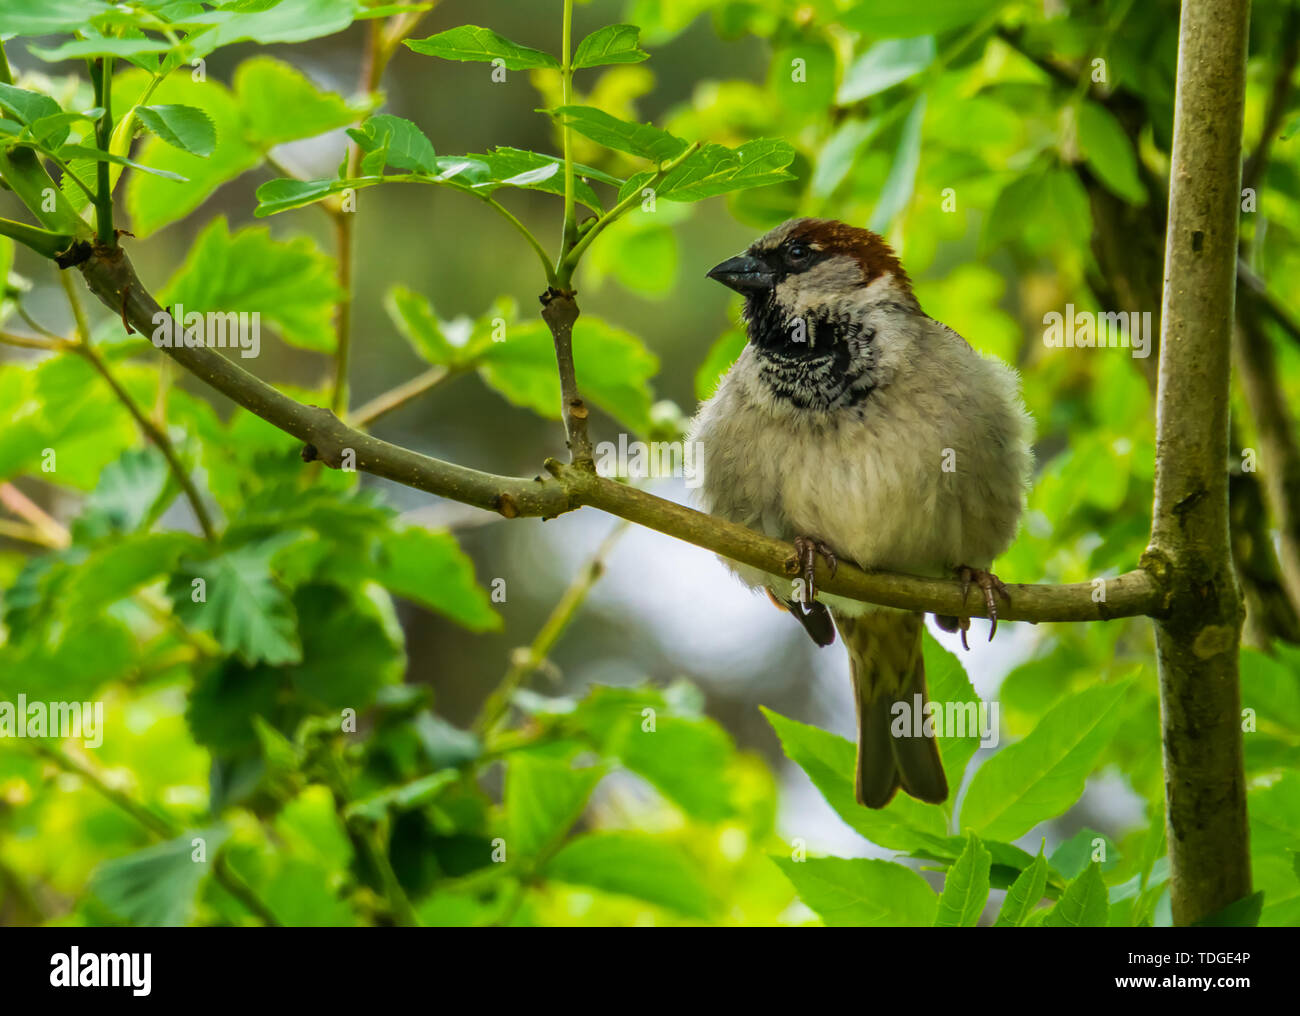 Closeup portrait of a house sparrow assis sur une branche d'arbre, oiseau commun espèce d'Eurasie, nature background Banque D'Images